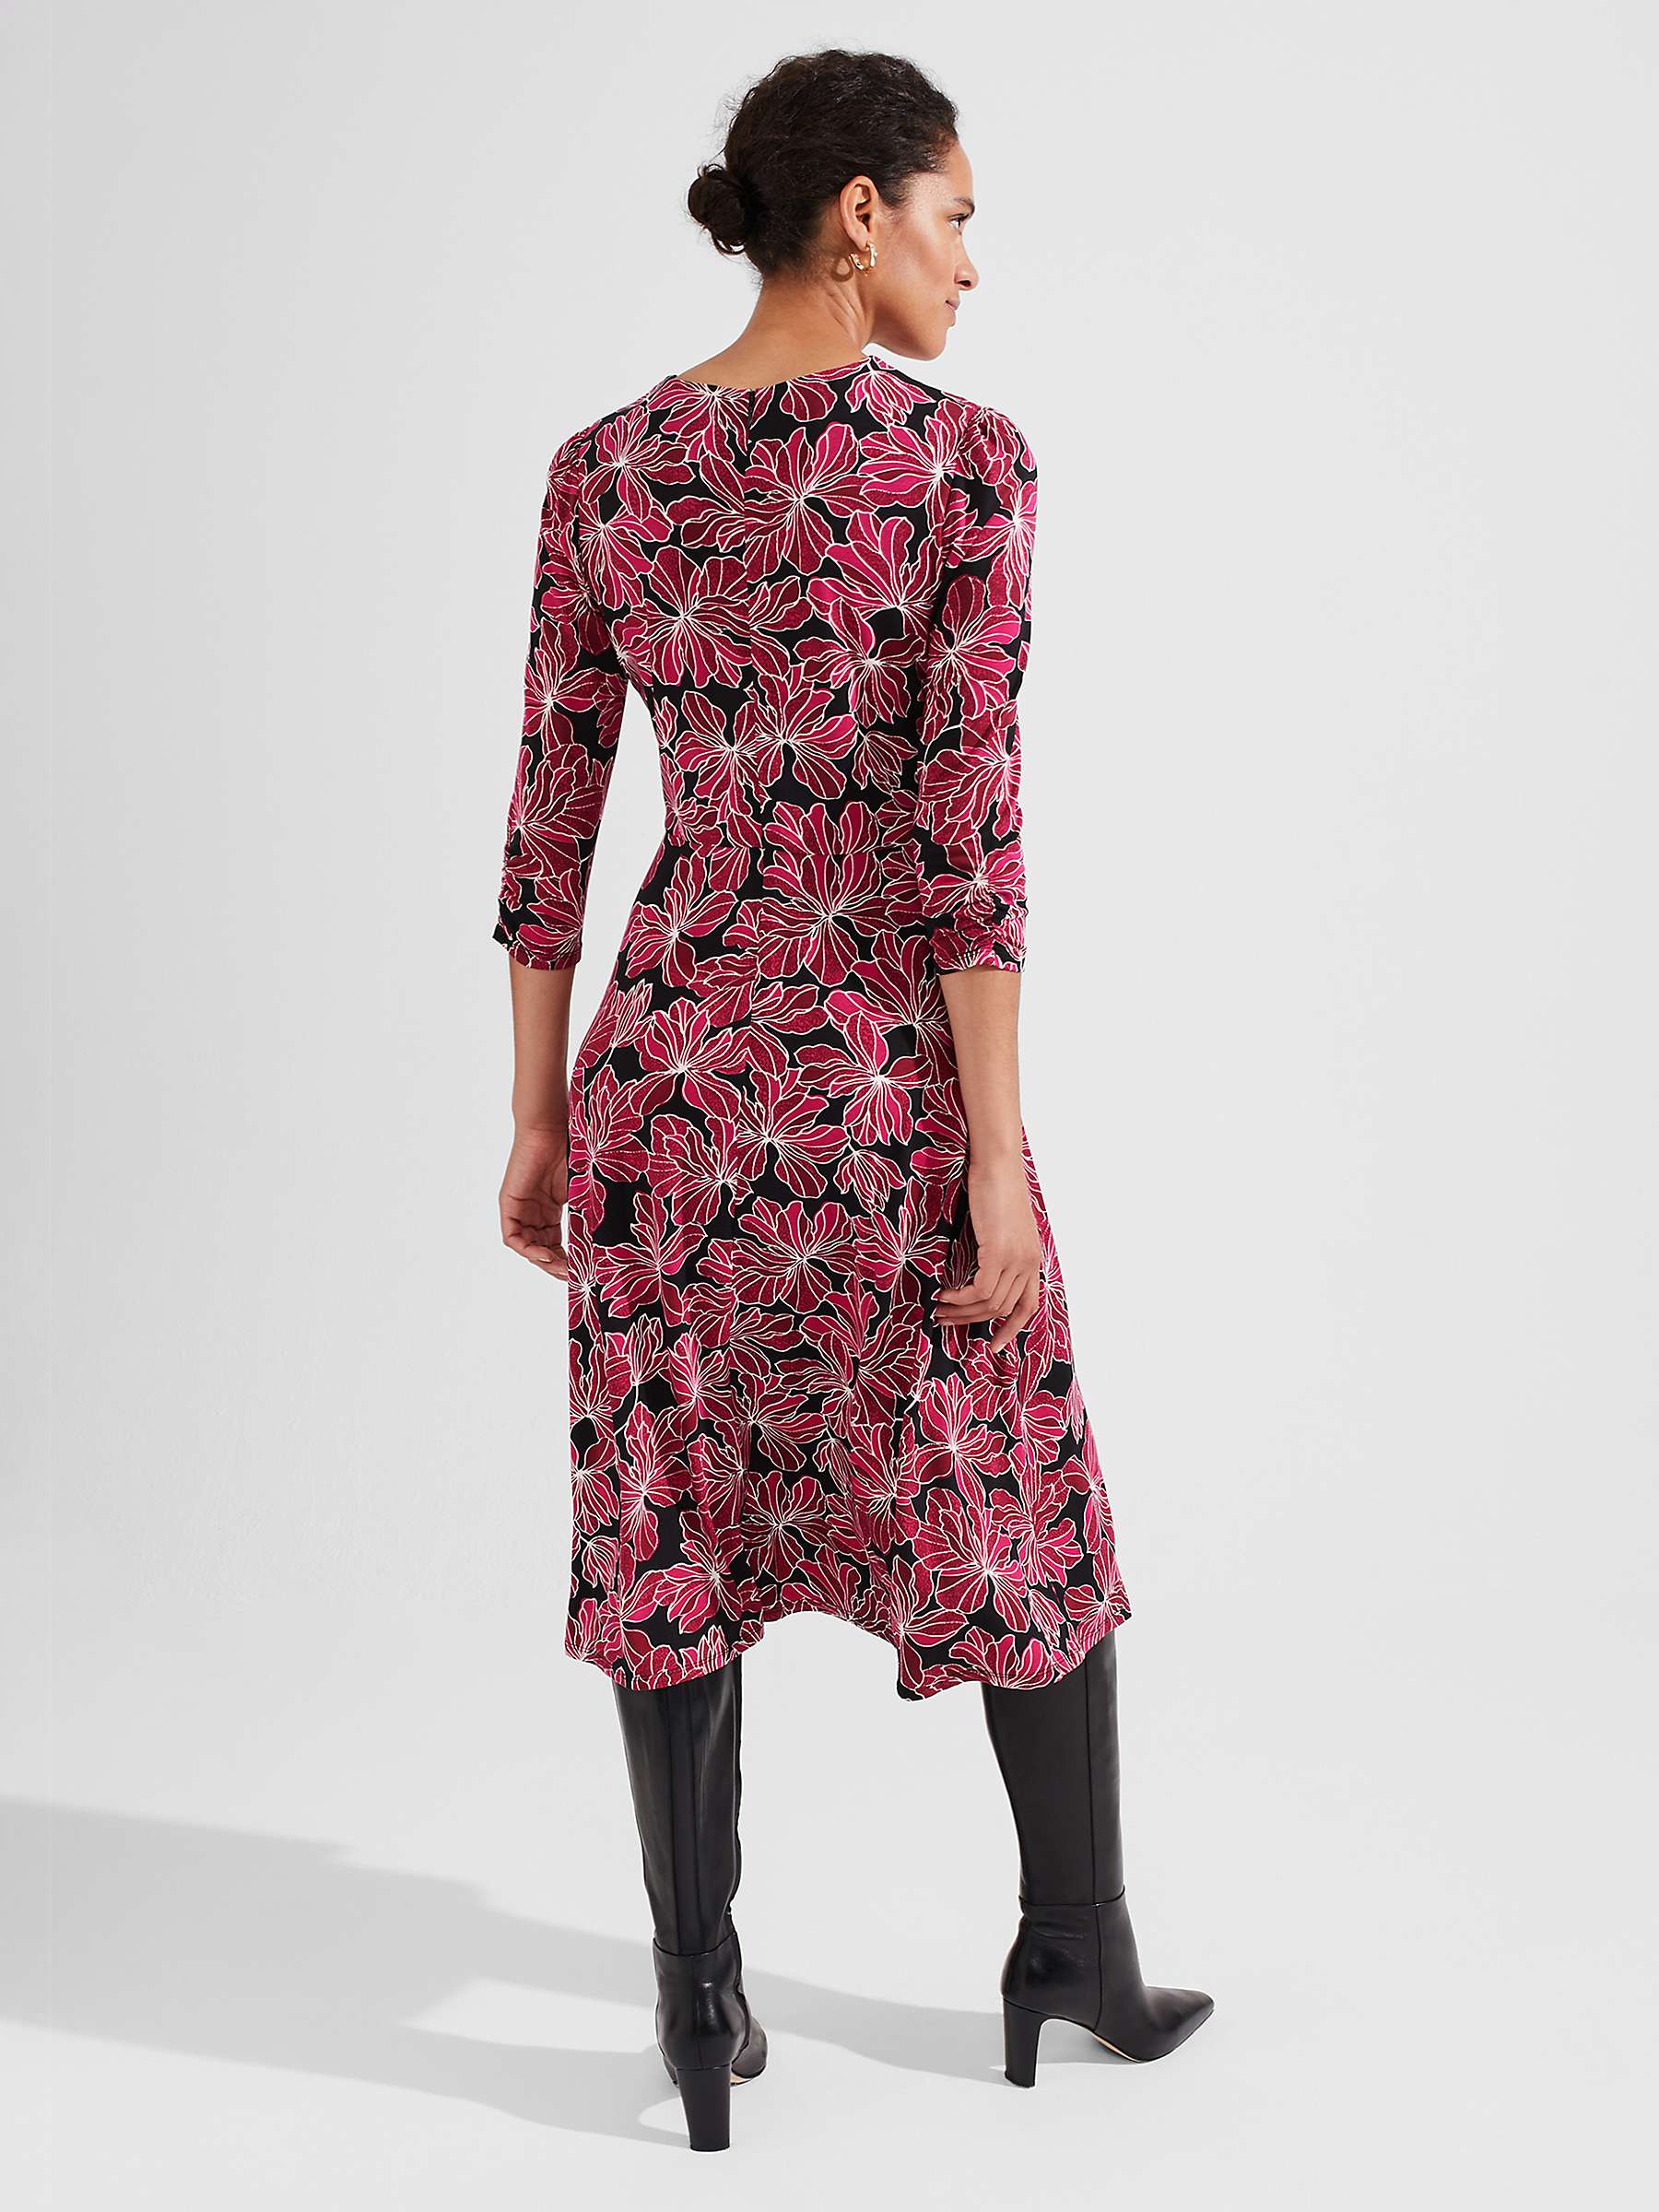 Buy Hobbs Mabel Floral Jersey Dress, Black/Pink Online at johnlewis.com